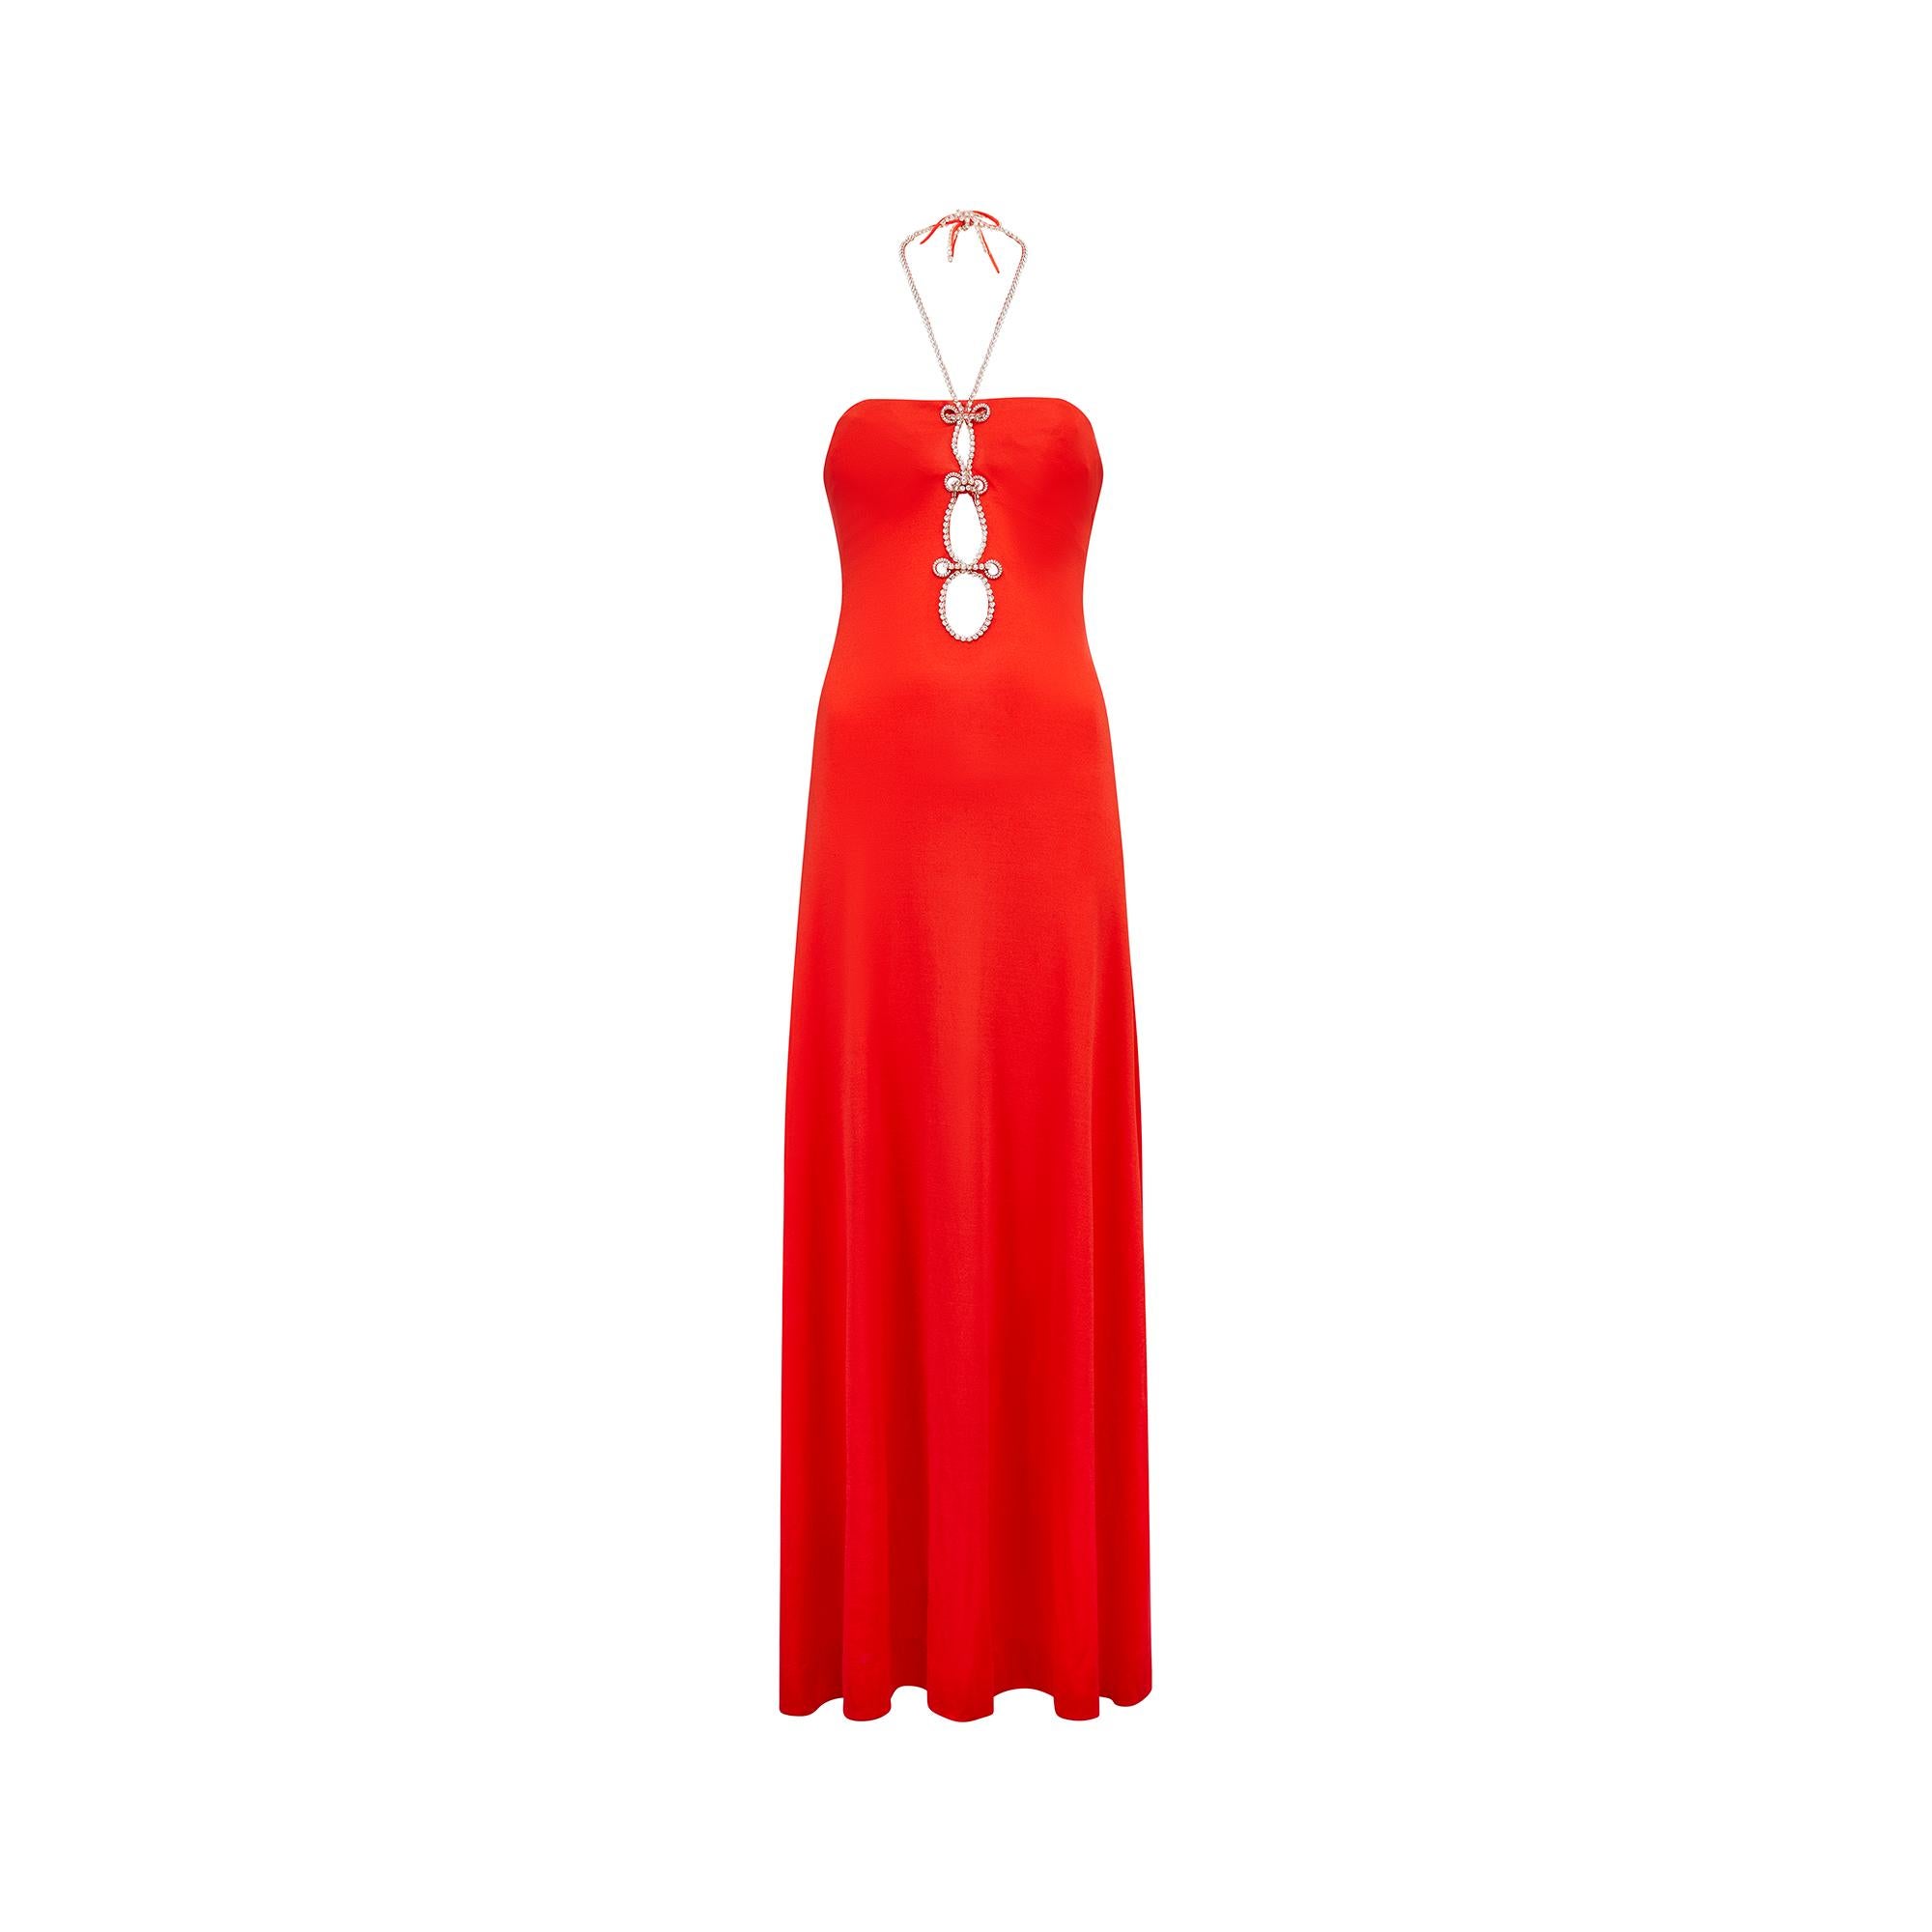 Fabelhaftes rotes Jersey-Maxikleid von Loris Azzaro aus den 1970er Jahren mit dem charakteristischen tiefen Schlüsselloch-Detail am vorderen Ausschnitt, das für einen glamourösen Effekt mit Strasssteinen verziert ist. Diese setzen sich an den